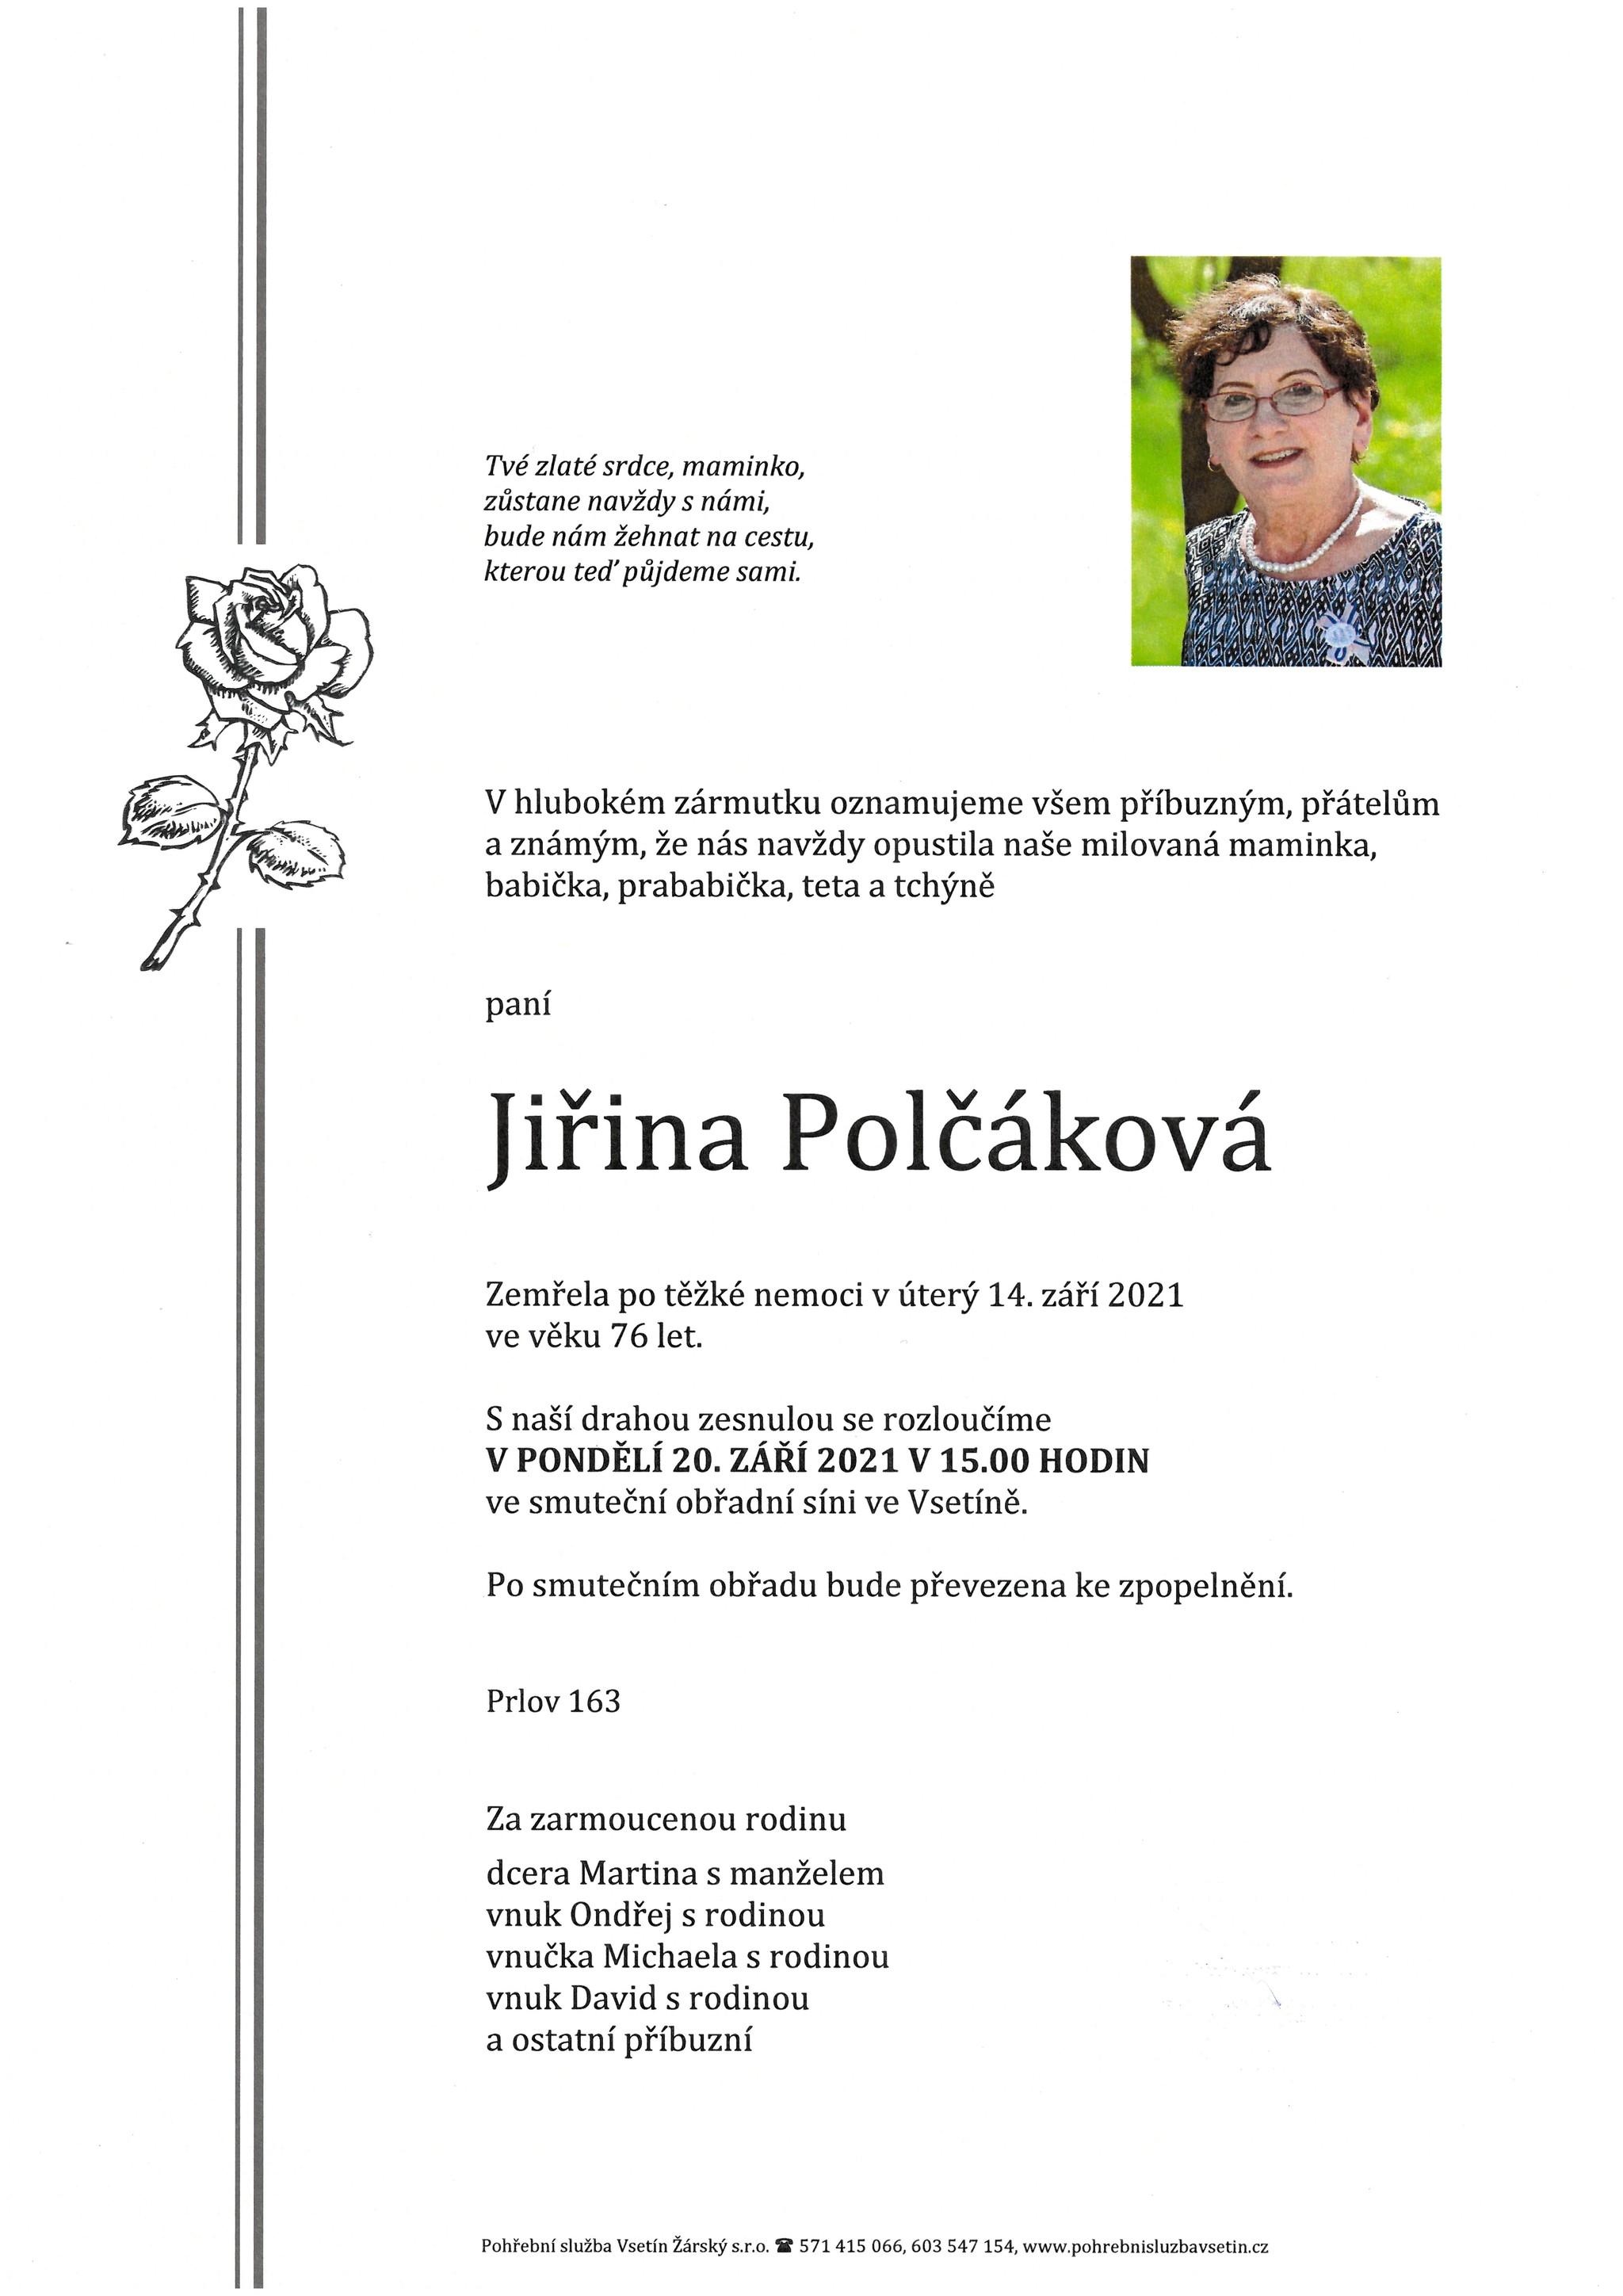 Jiřina Polčáková